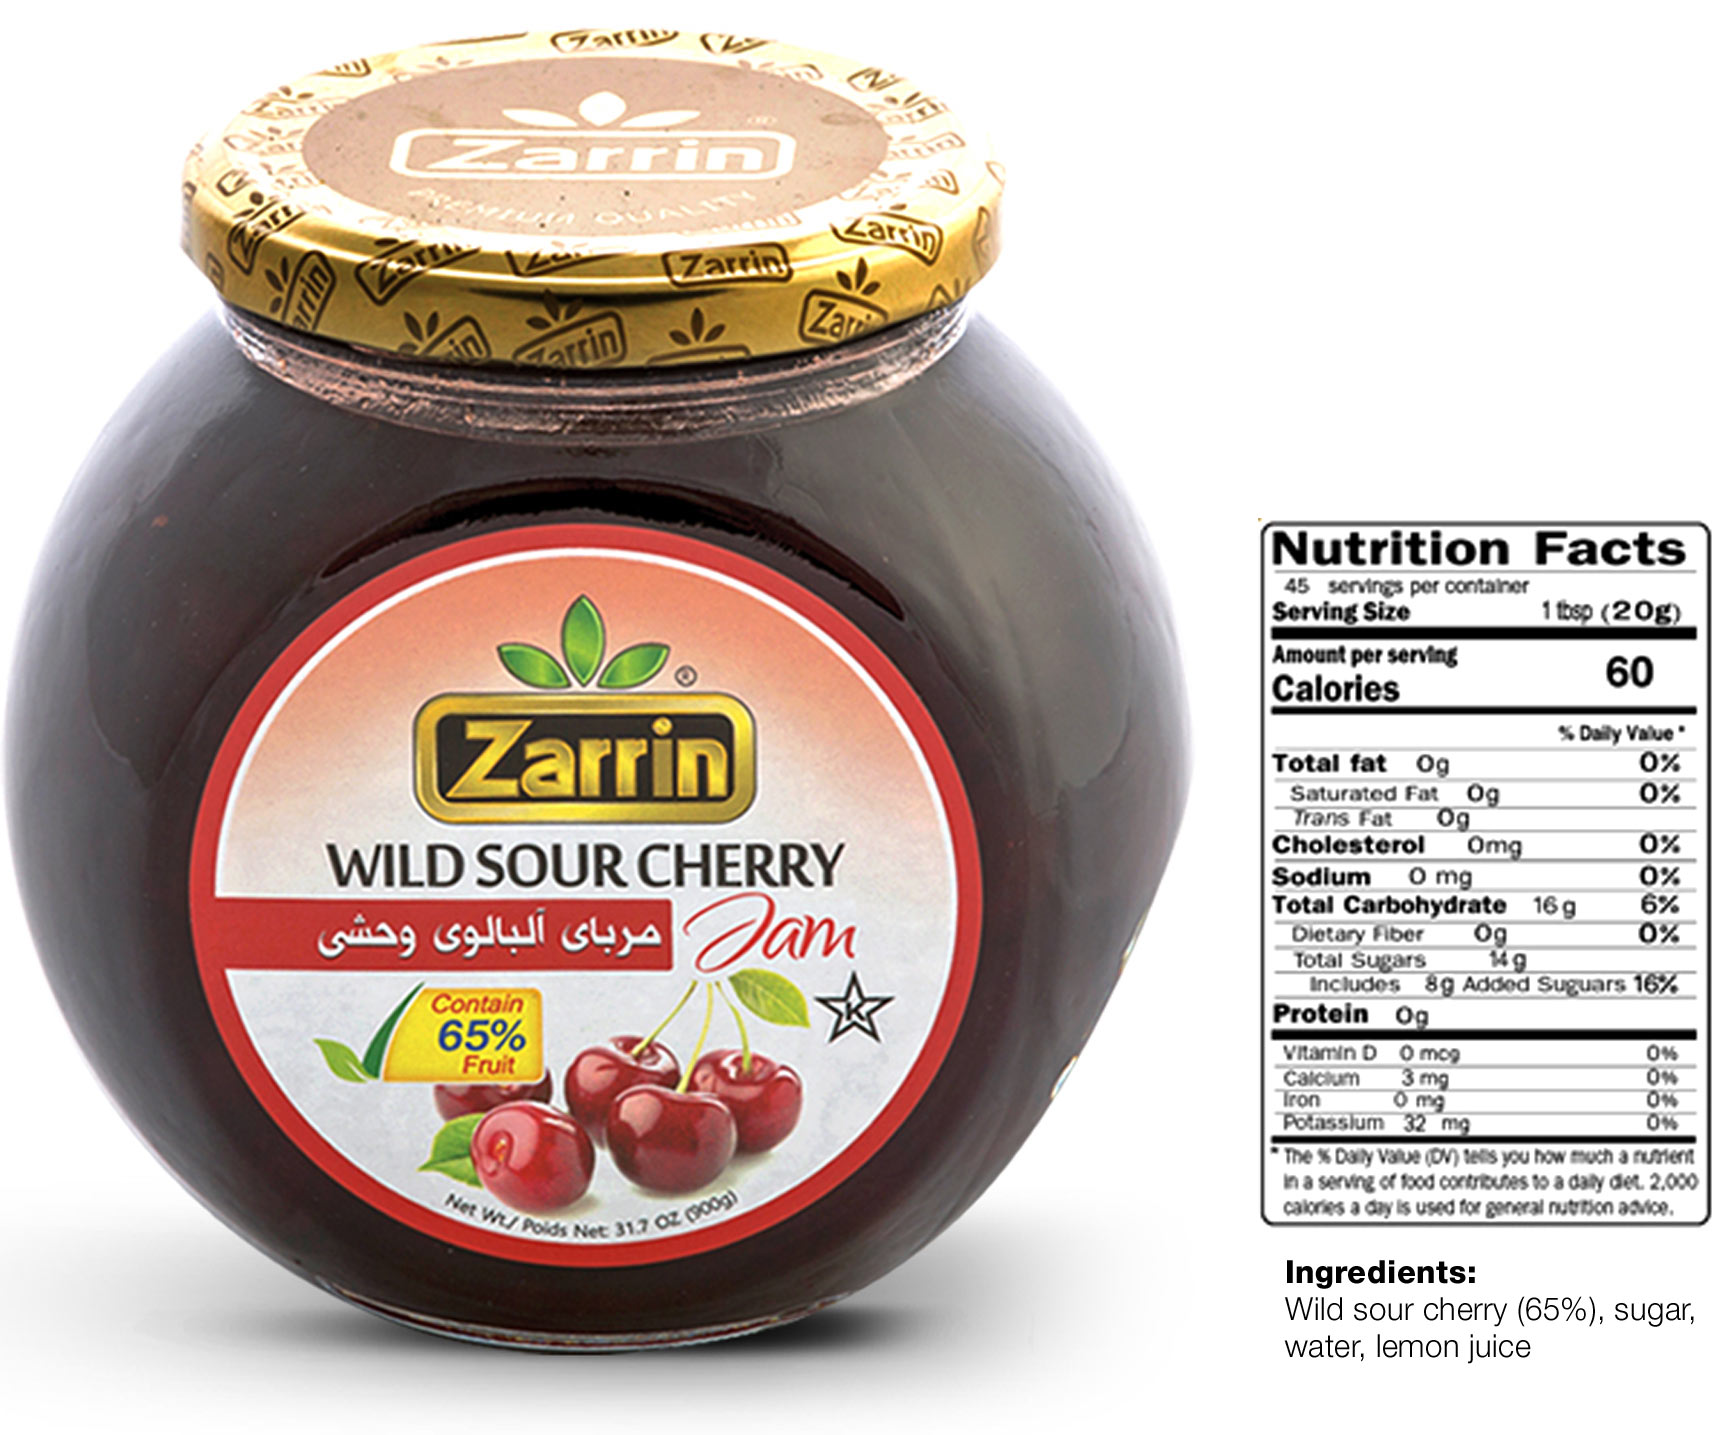 Zarrin wild sour cherry jam in 31.75 oz glass jar.